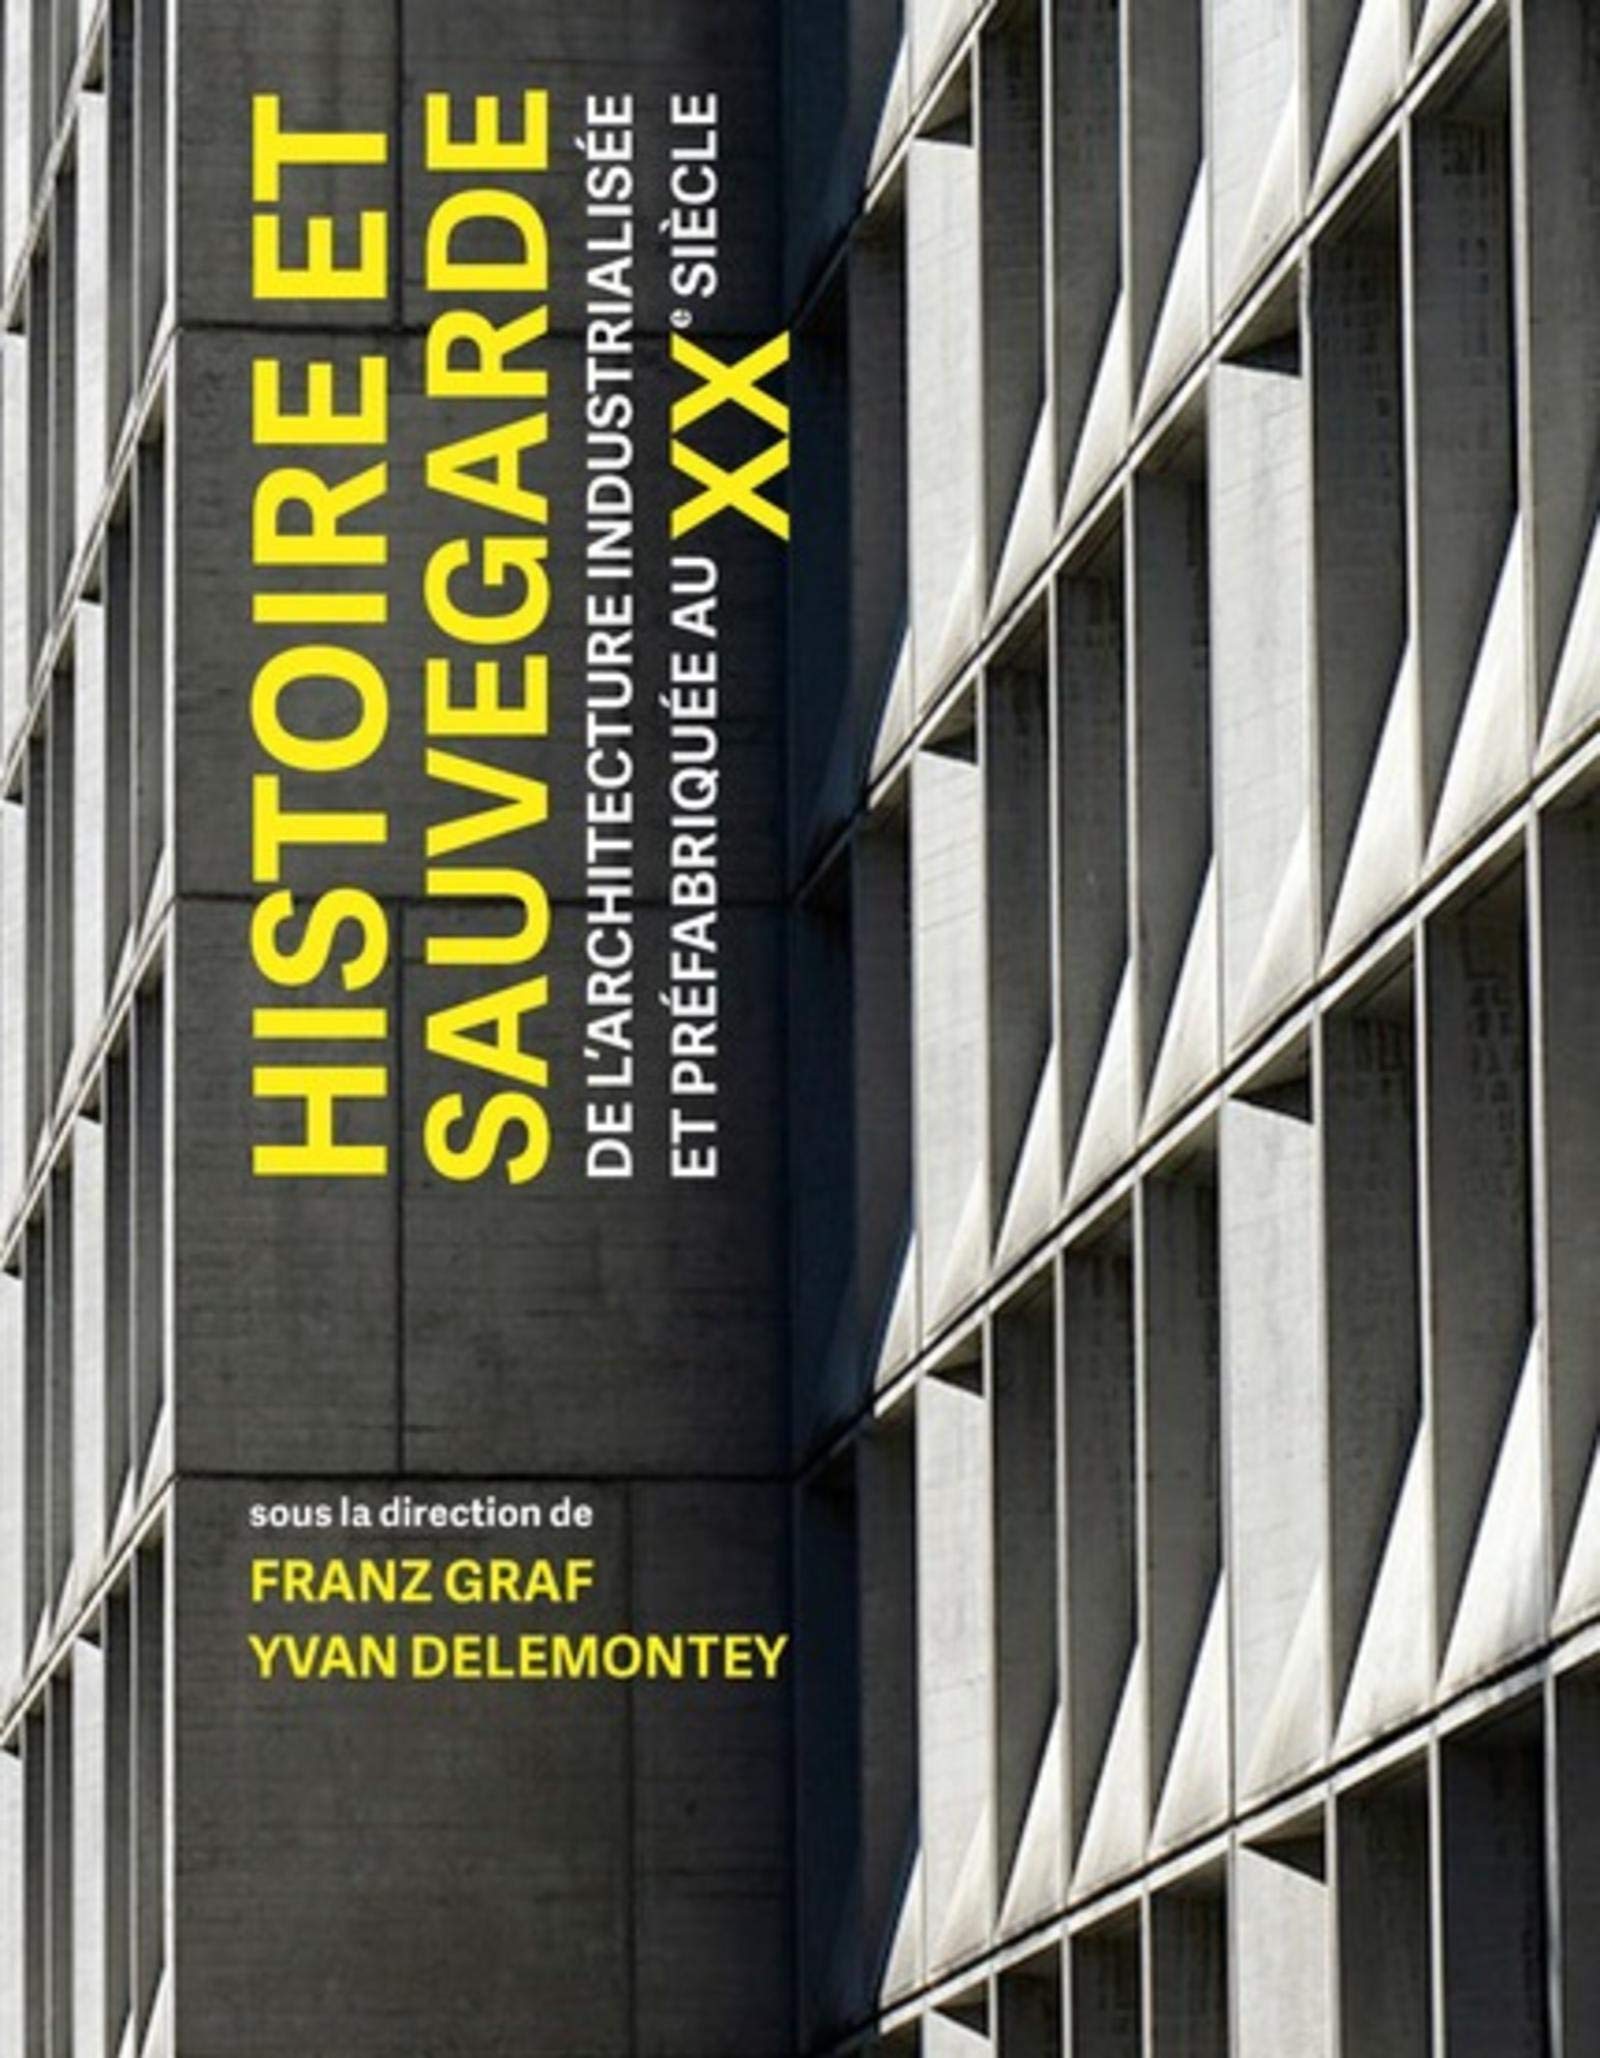 Histoire et sauvegarde de l'architecture industrialisée et préfabriquée au XXe siècle, 2020, 360 p.